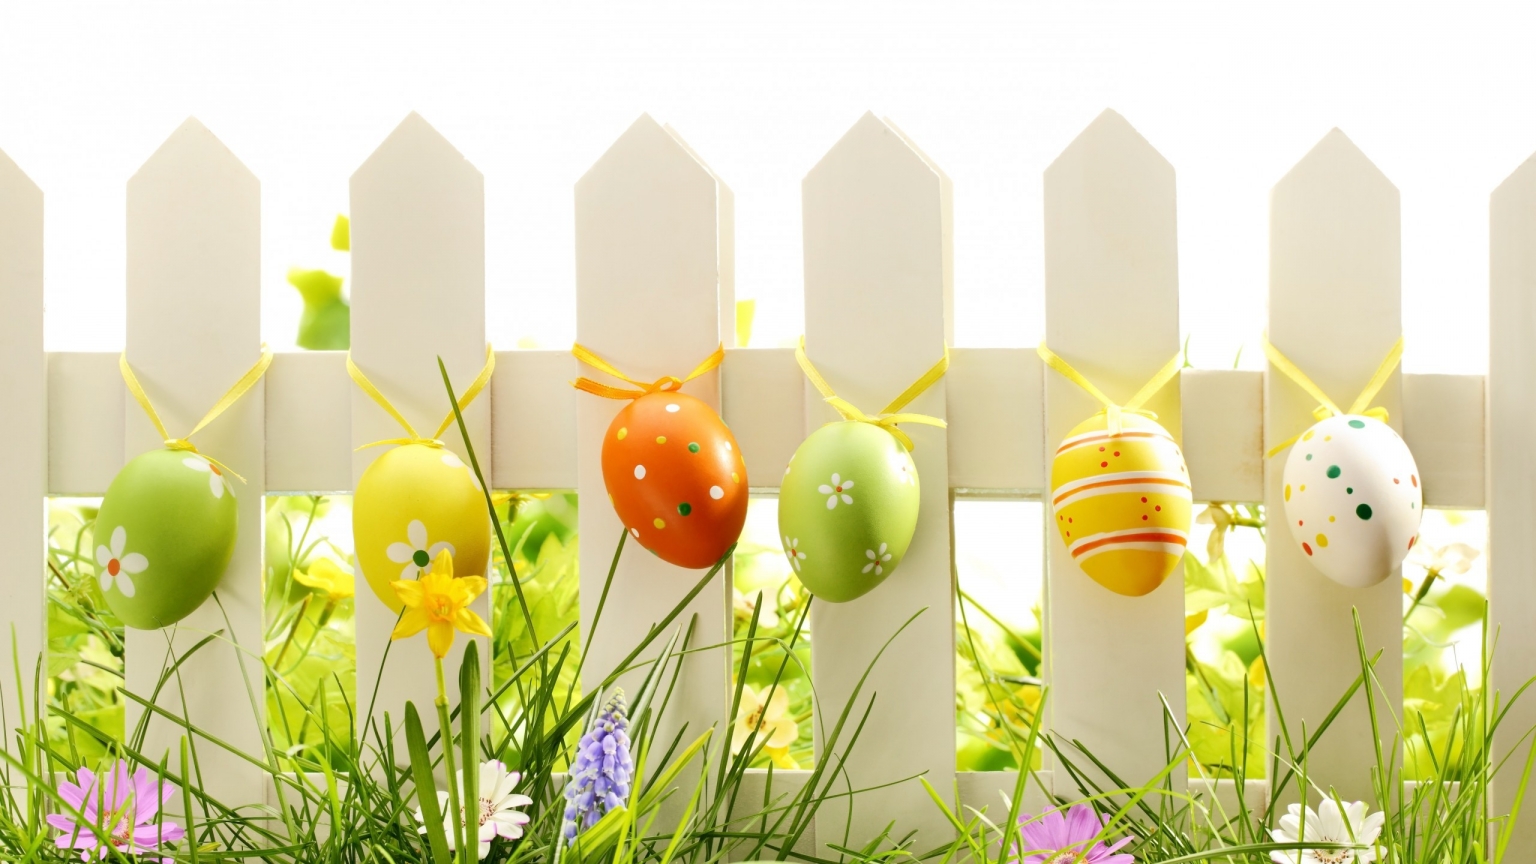 Lovely Easter Eggs Decoration for 1536 x 864 HDTV resolution